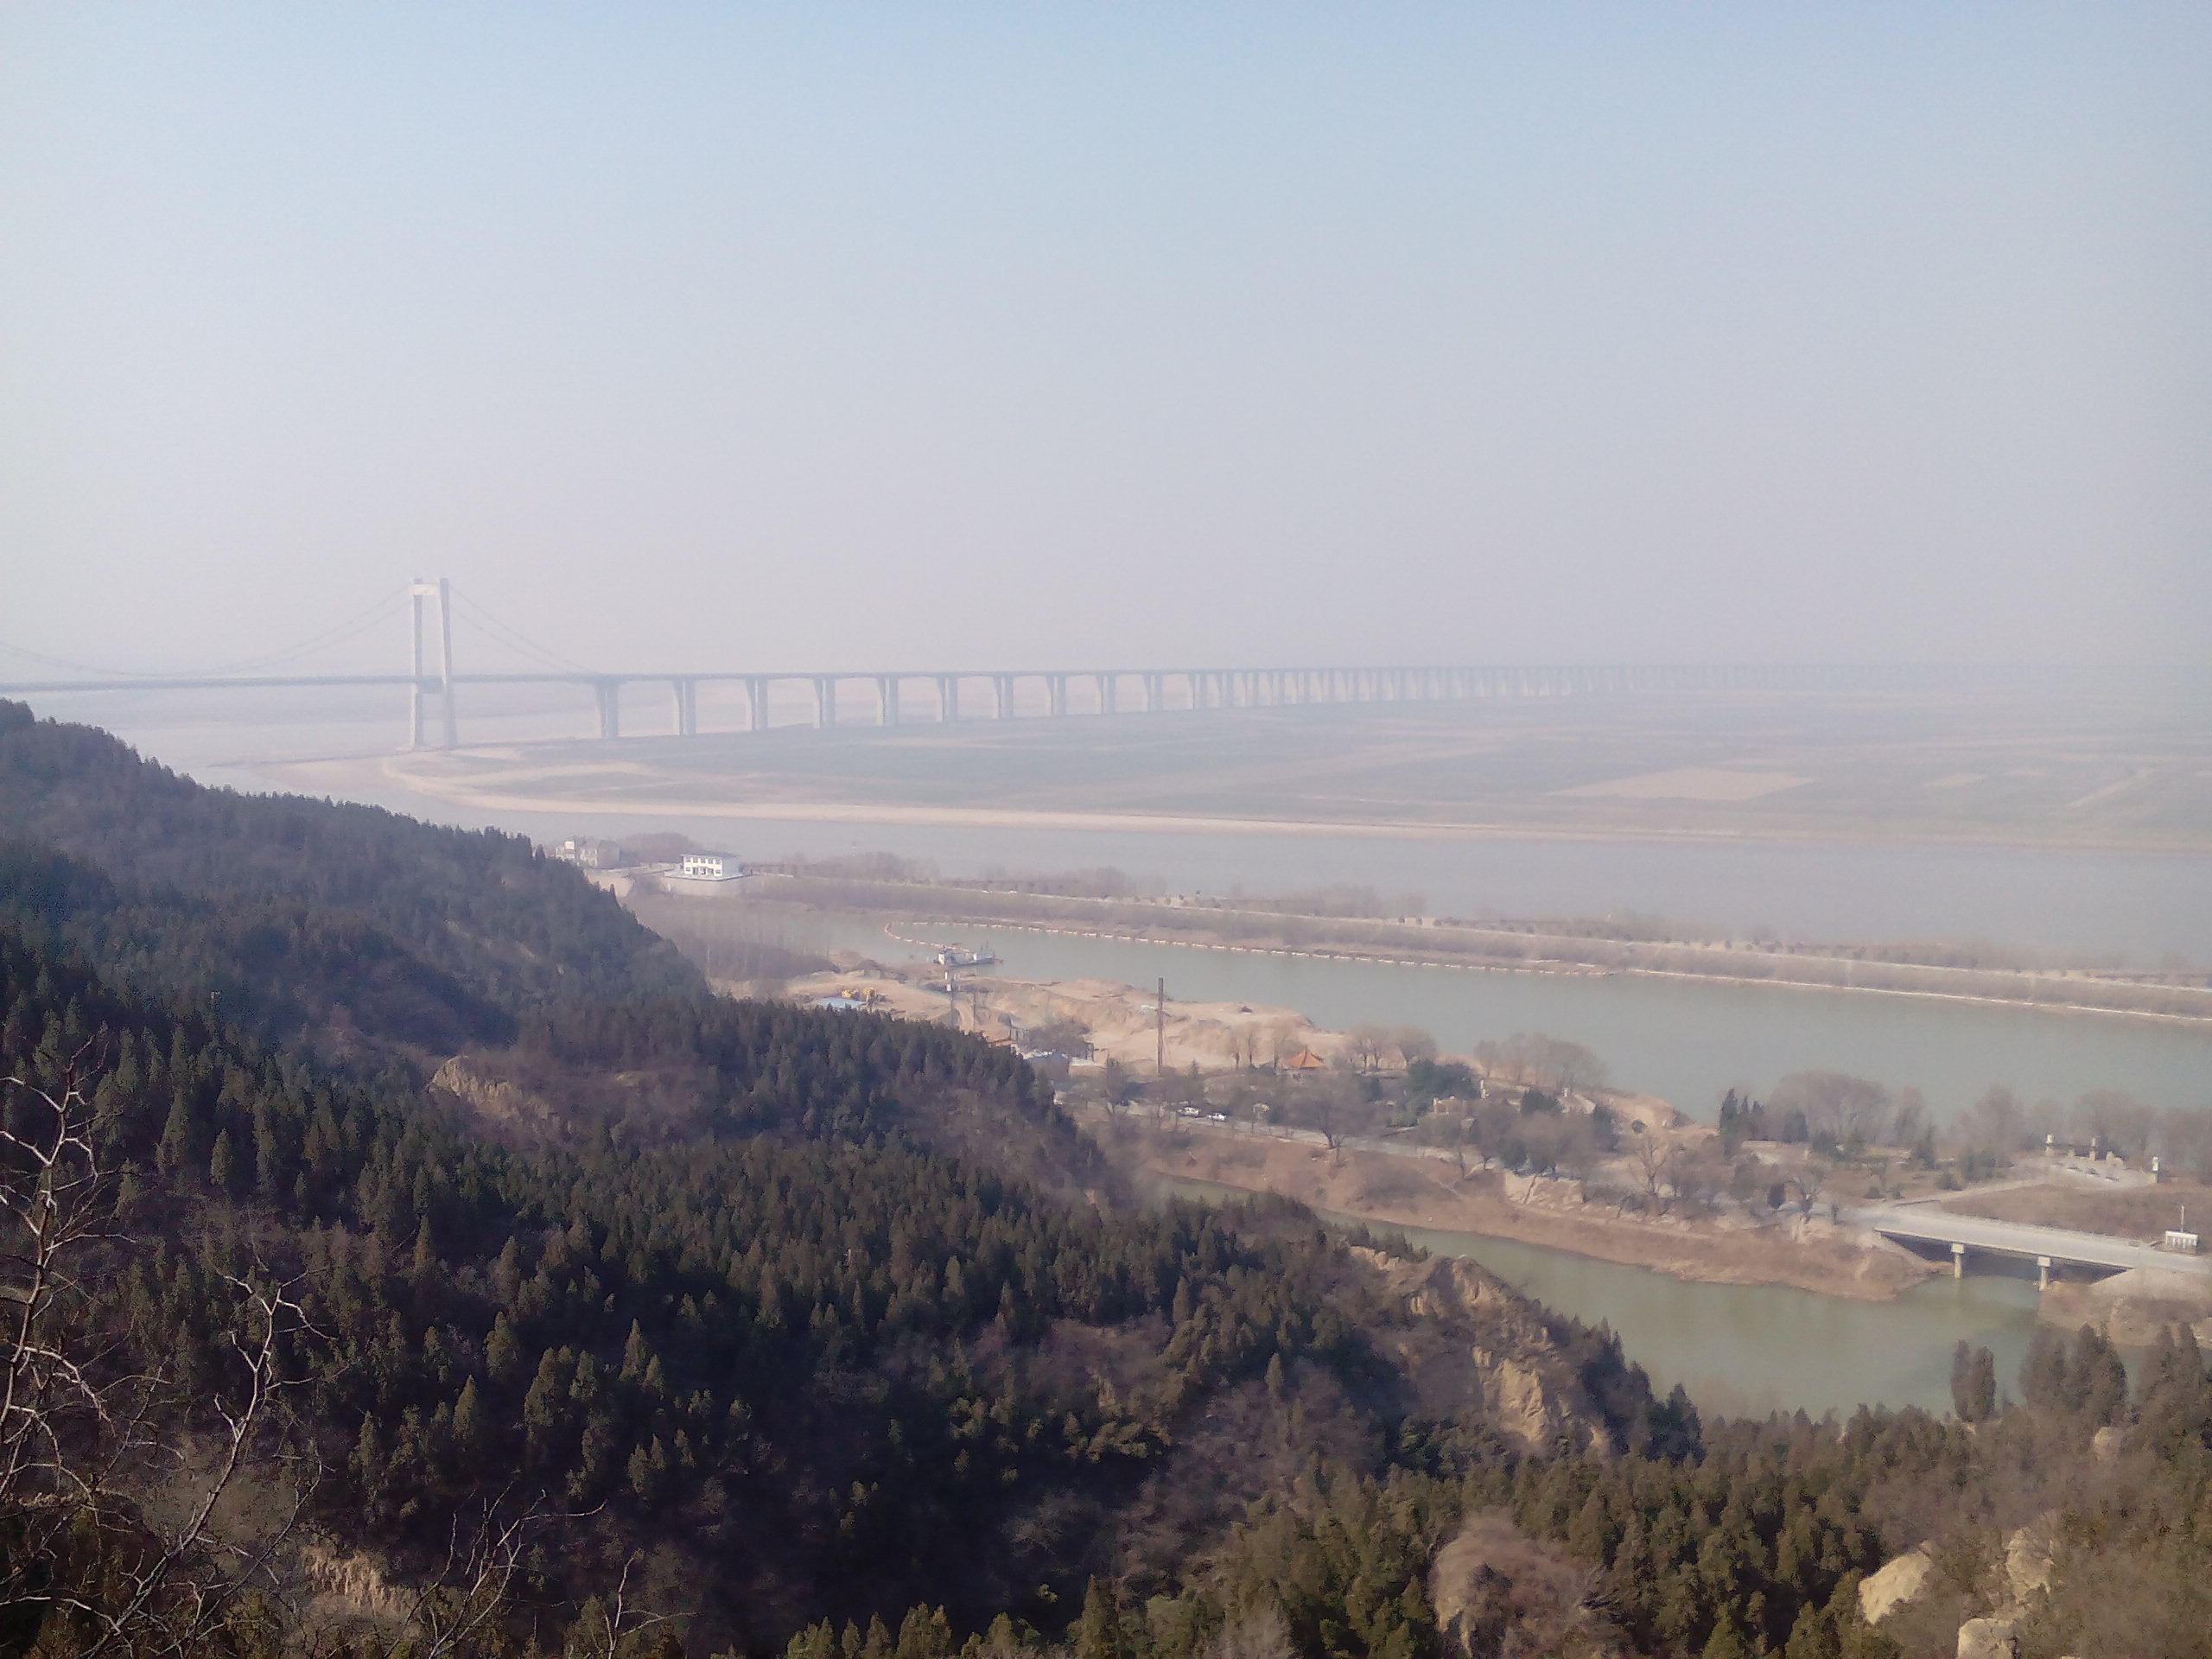 【携程攻略】郑州郑州黄河文化公园景点,这个景点的特点是：西面是山峰，来源于黄土高原，东面是平原，黄河水…